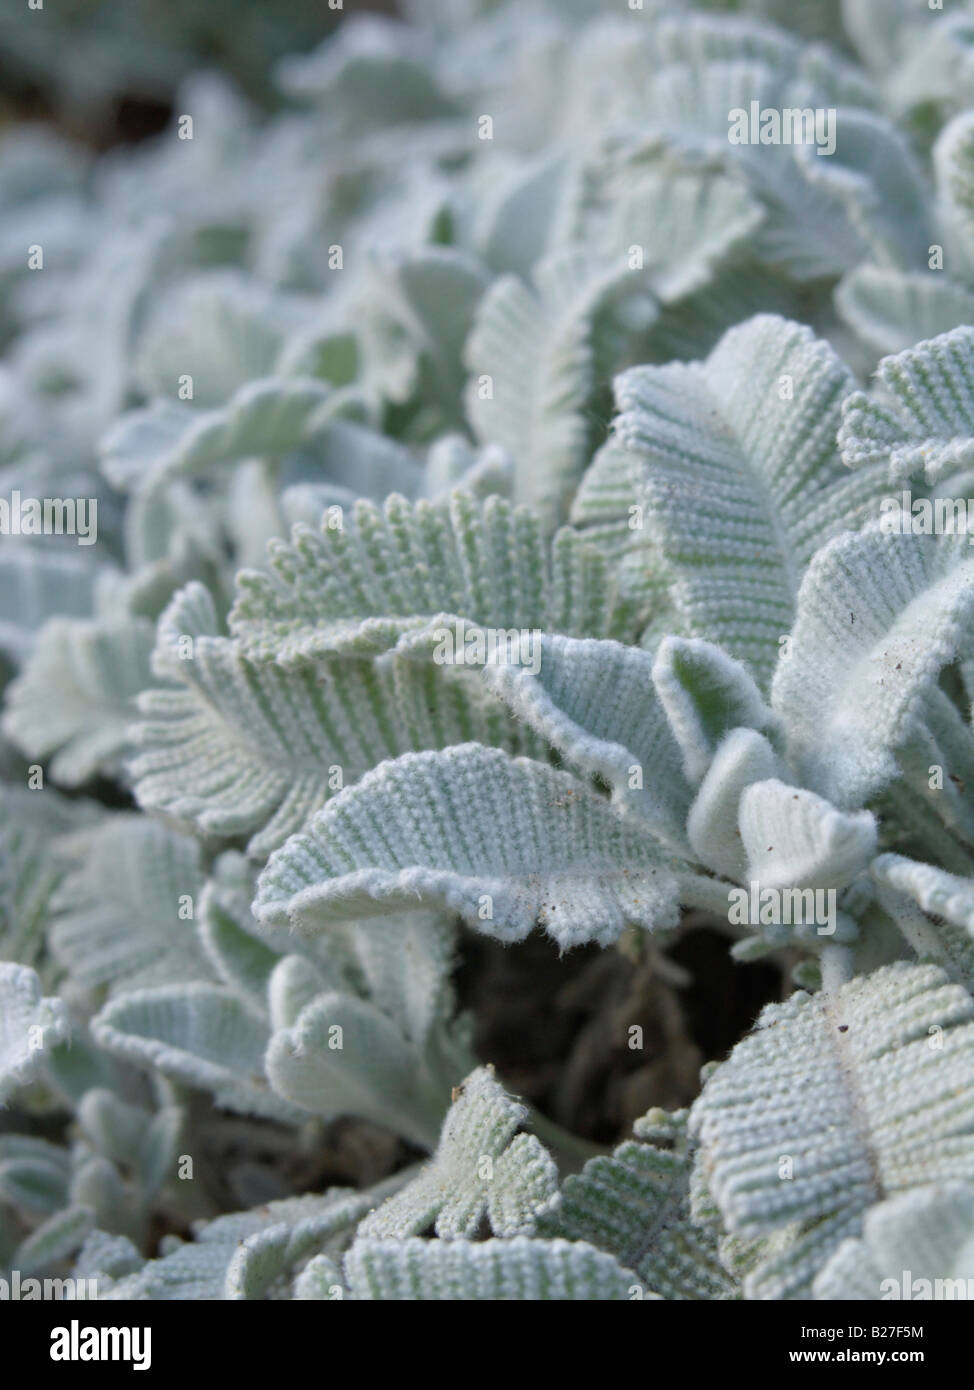 Silver lace tansy (Tanacetum haradjanii) Stock Photo